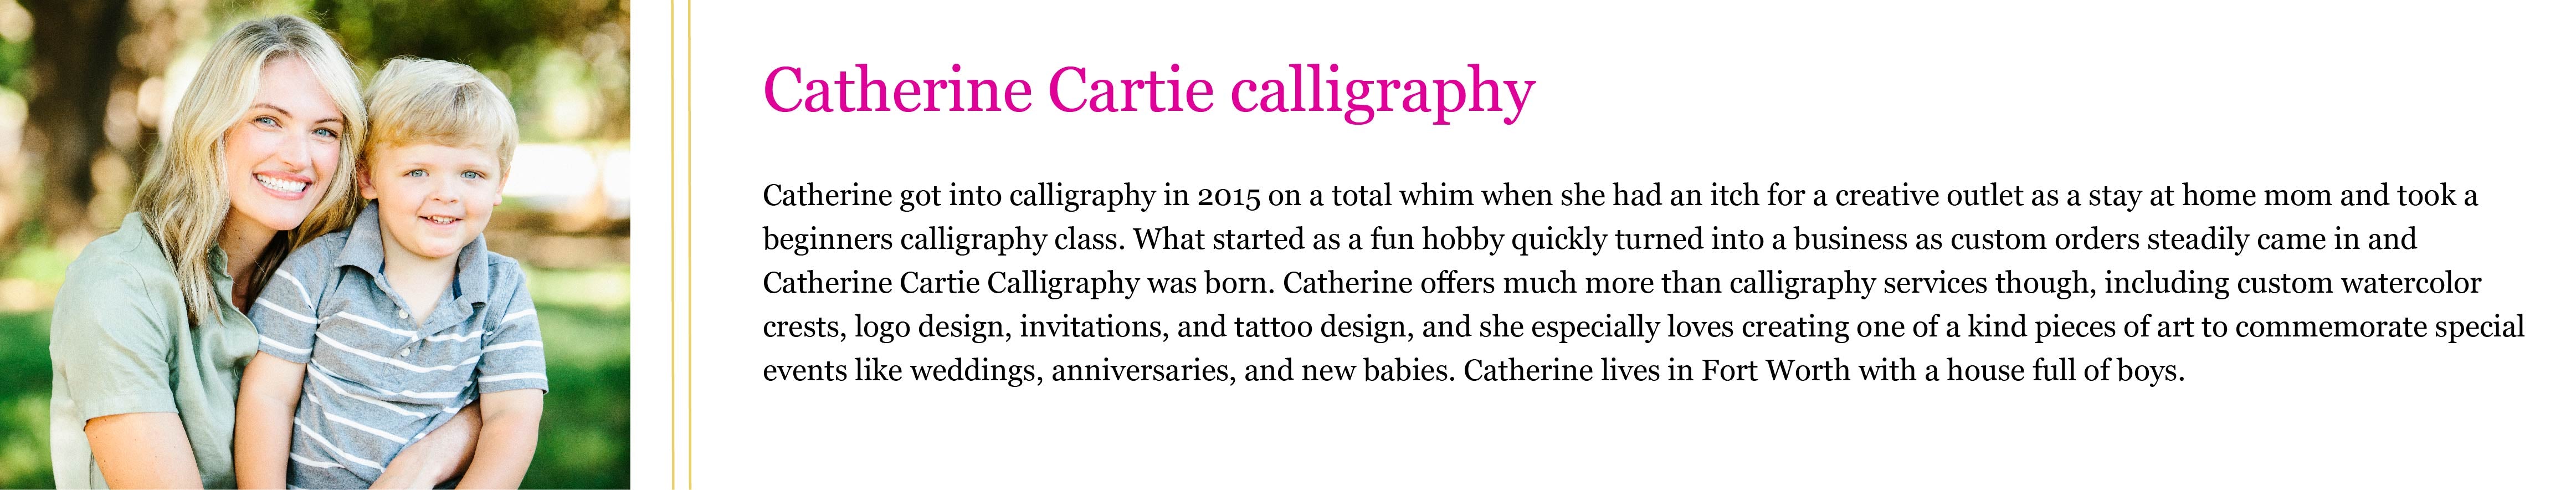 Catherine Cartie